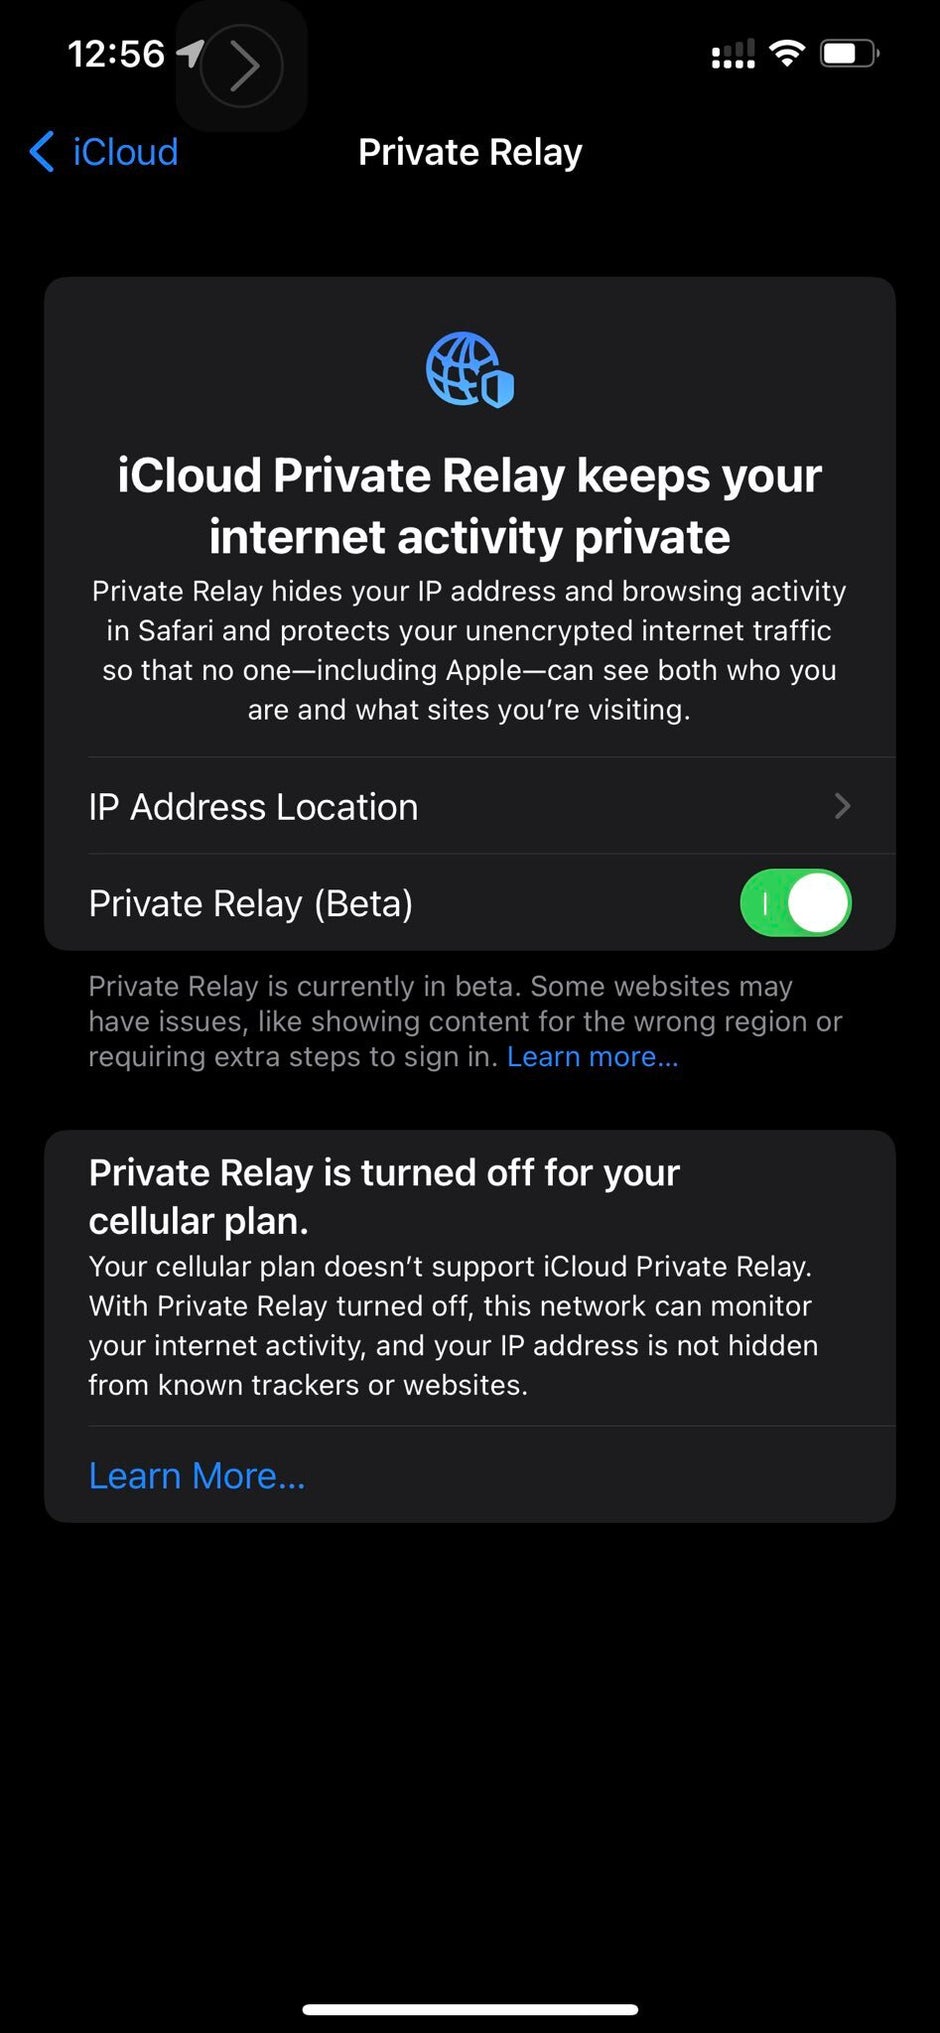 Avertissement iCloud Private Relay T-Mobile - La version de mise à jour iOS 15.3 corrigera les avertissements iCloud Private Relay sur les plans T-Mobile